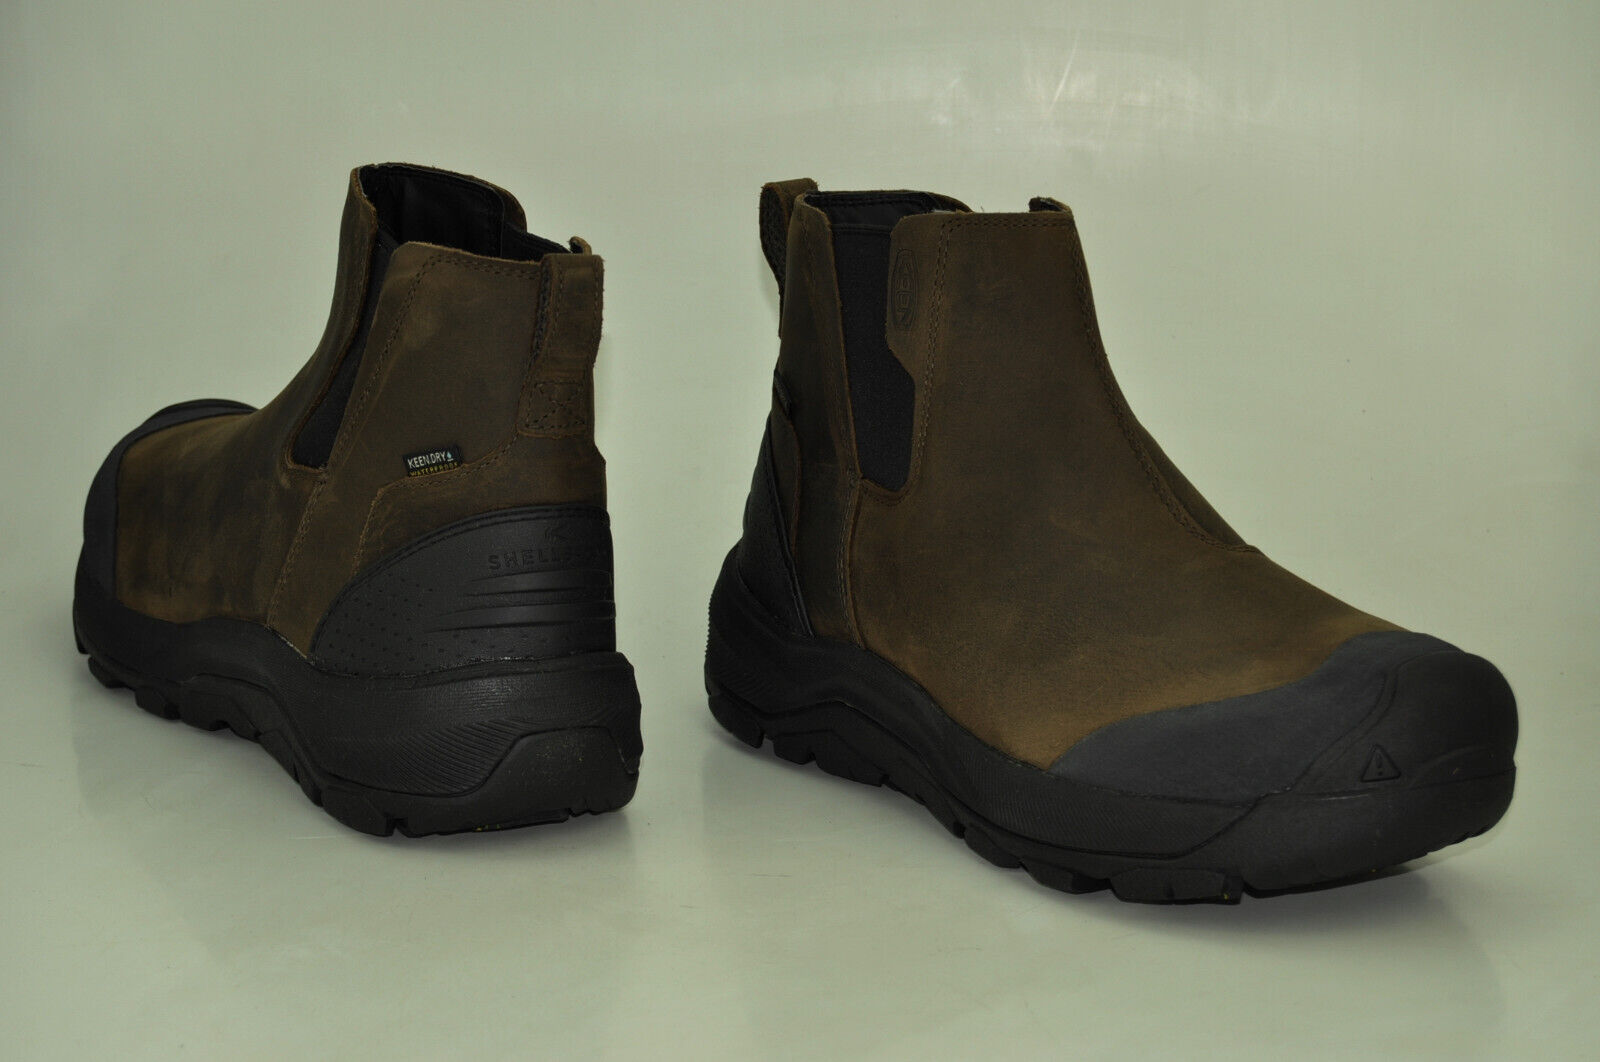 KEEN Revel IV Chelsea Boots Stiefel Waterproof Outdoorschuhe Herren